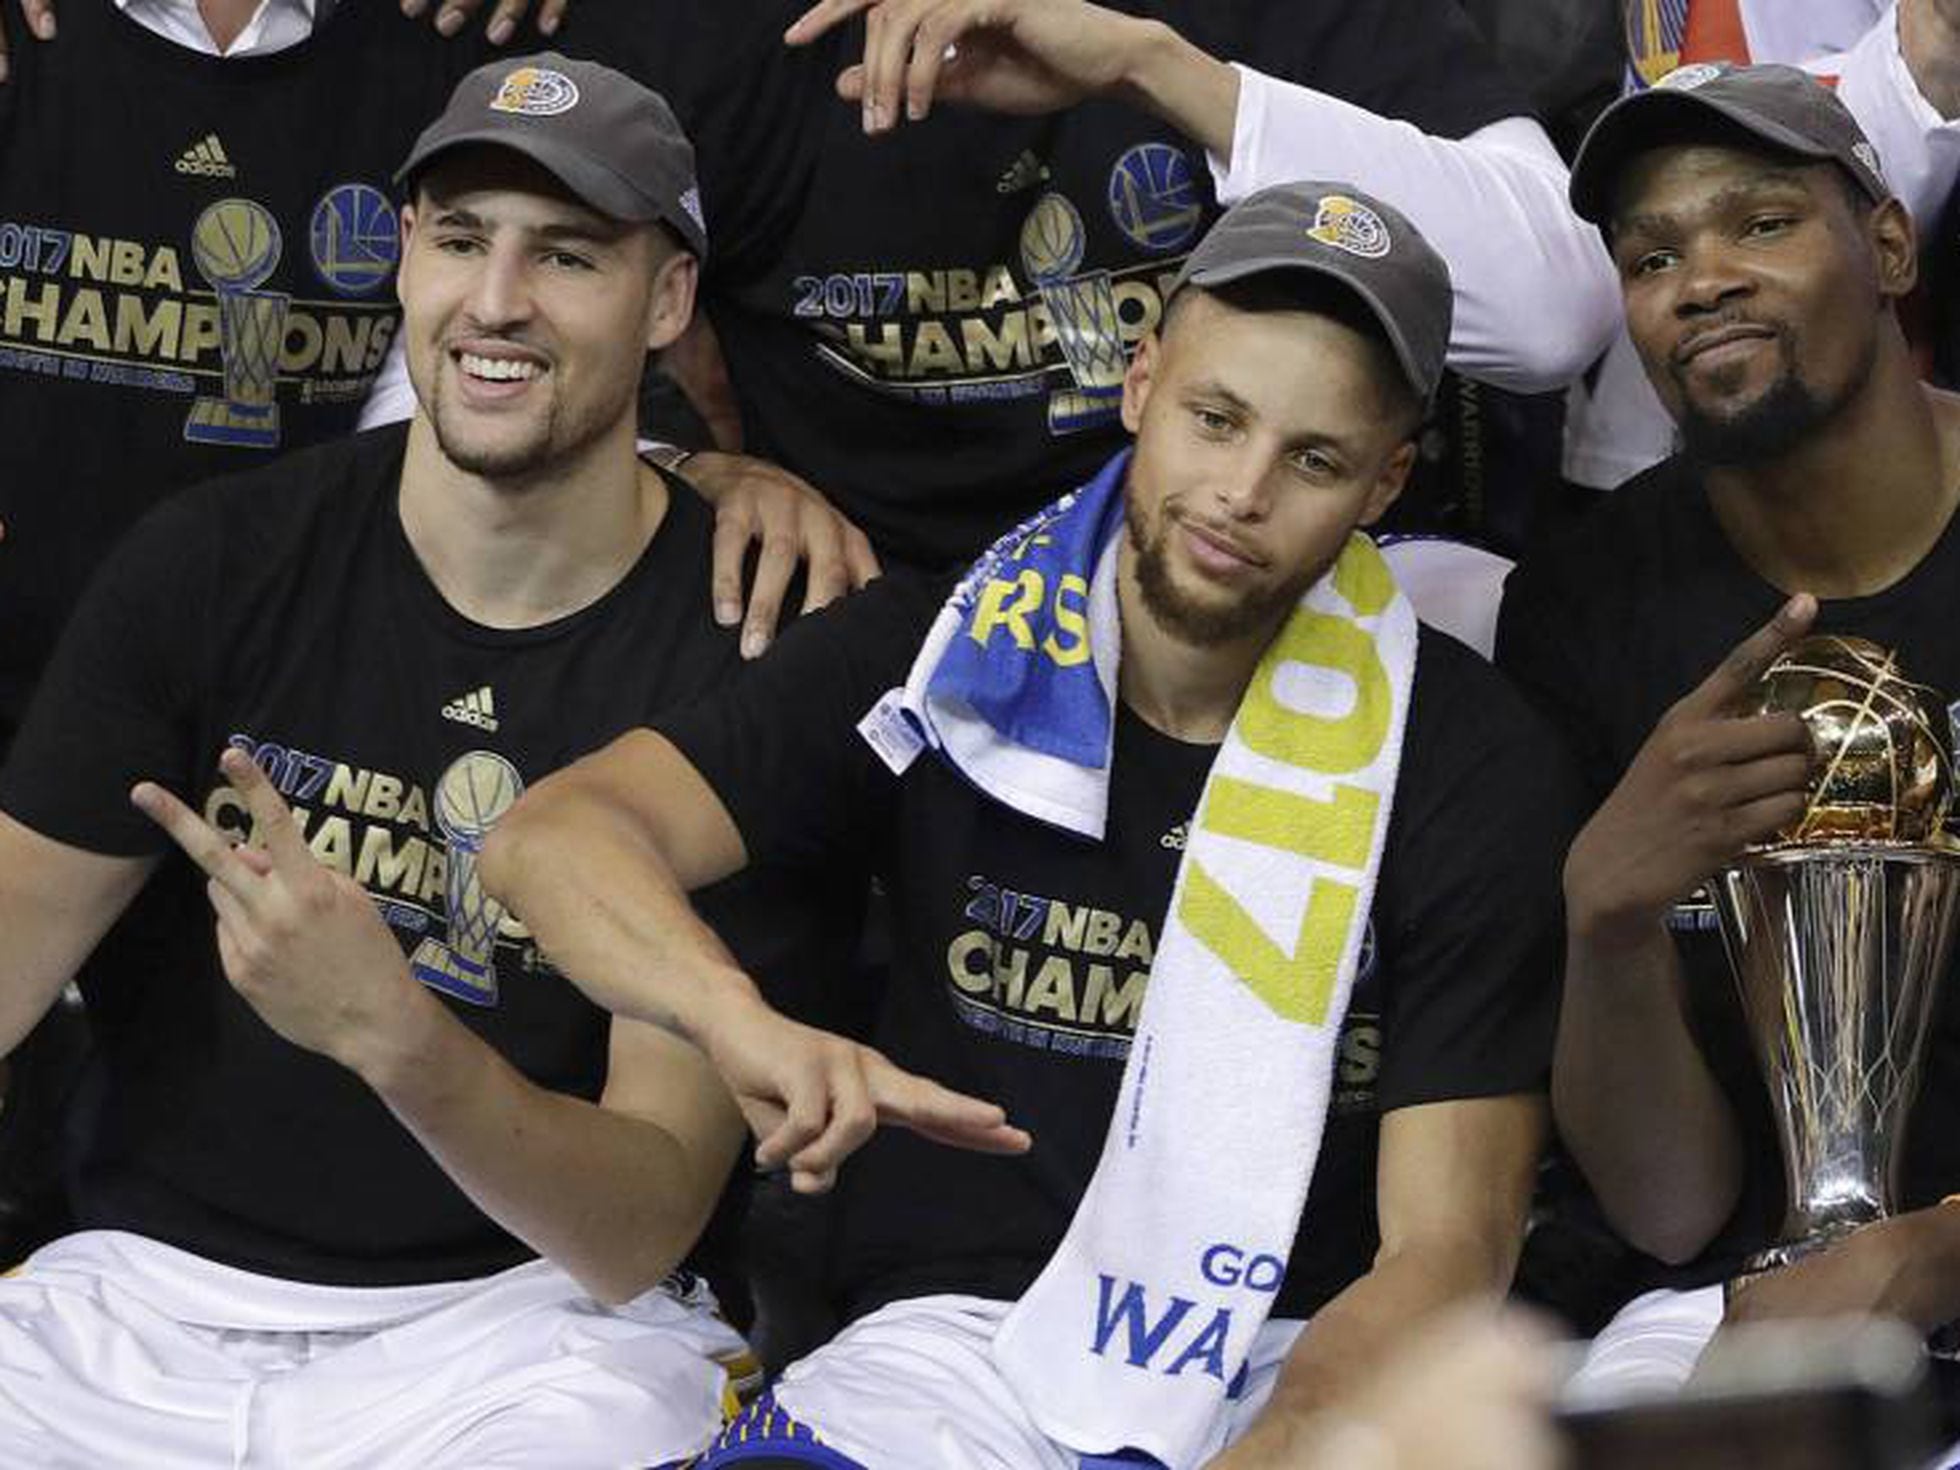 componente recompensa sentido Final NBA 2017: Los Warriors de Kevin Durant y Stephen Curry logran un  anillo que marca una época | Deportes | EL PAÍS